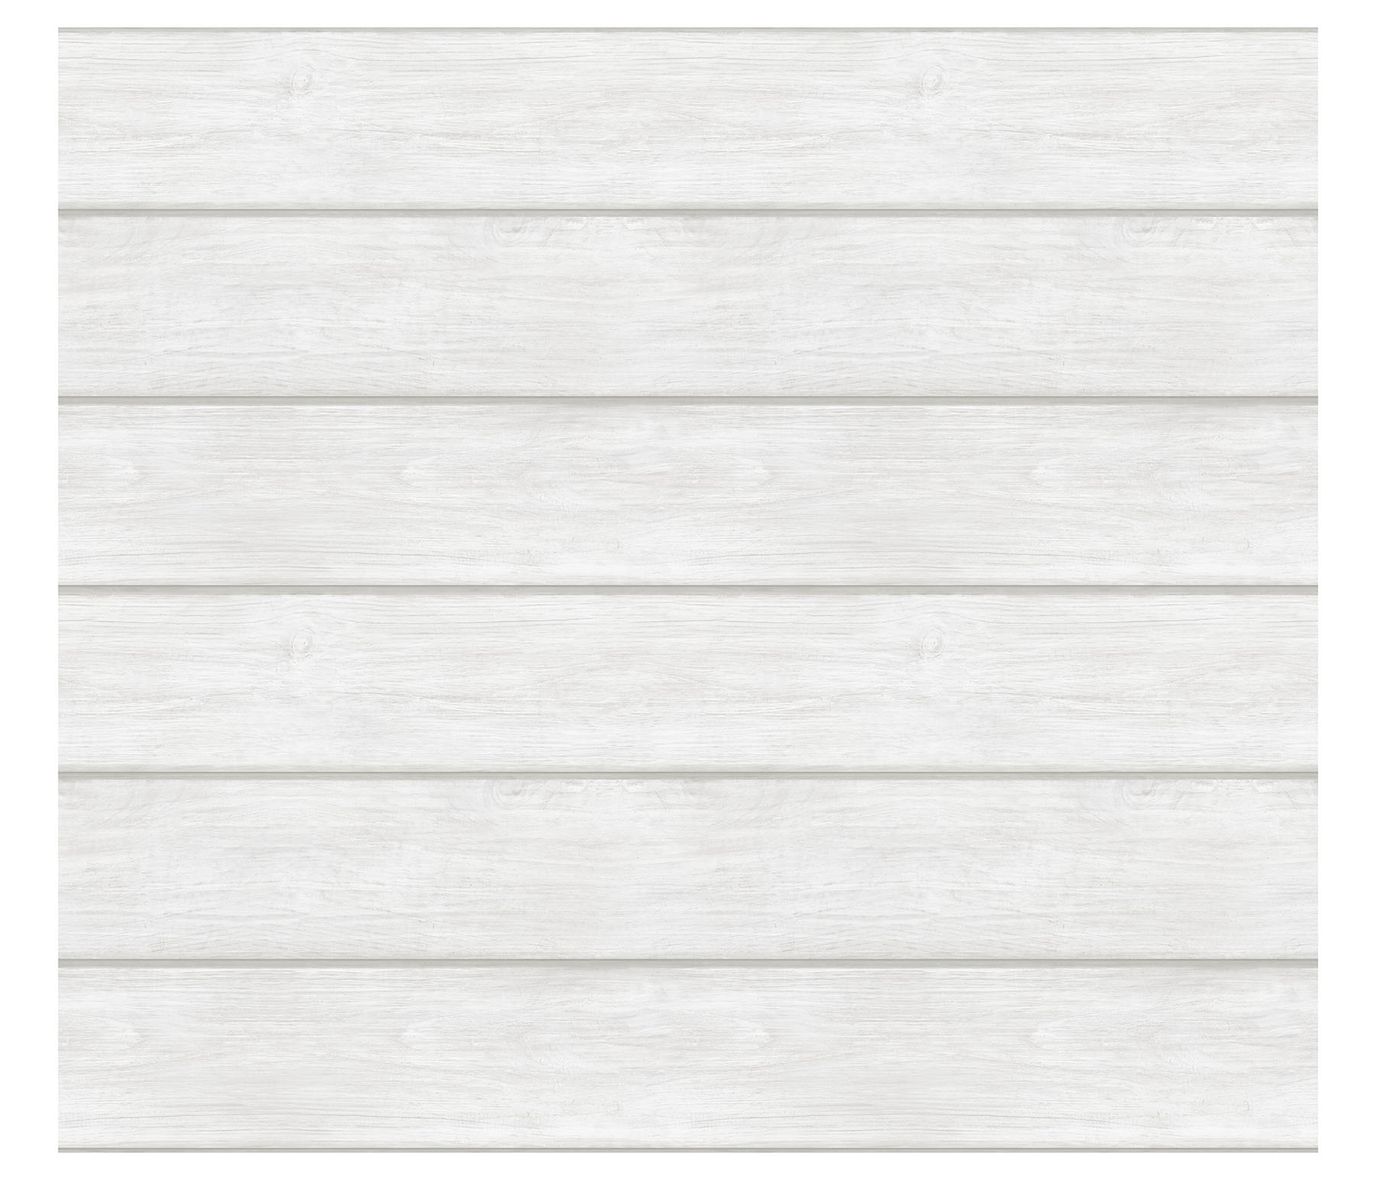 楽天Walmart 楽天市場店[送料無料] WallPops 白木のティンバーウォールアートキット [楽天海外通販] | WallPops White Wood Timber Wall Art Kit